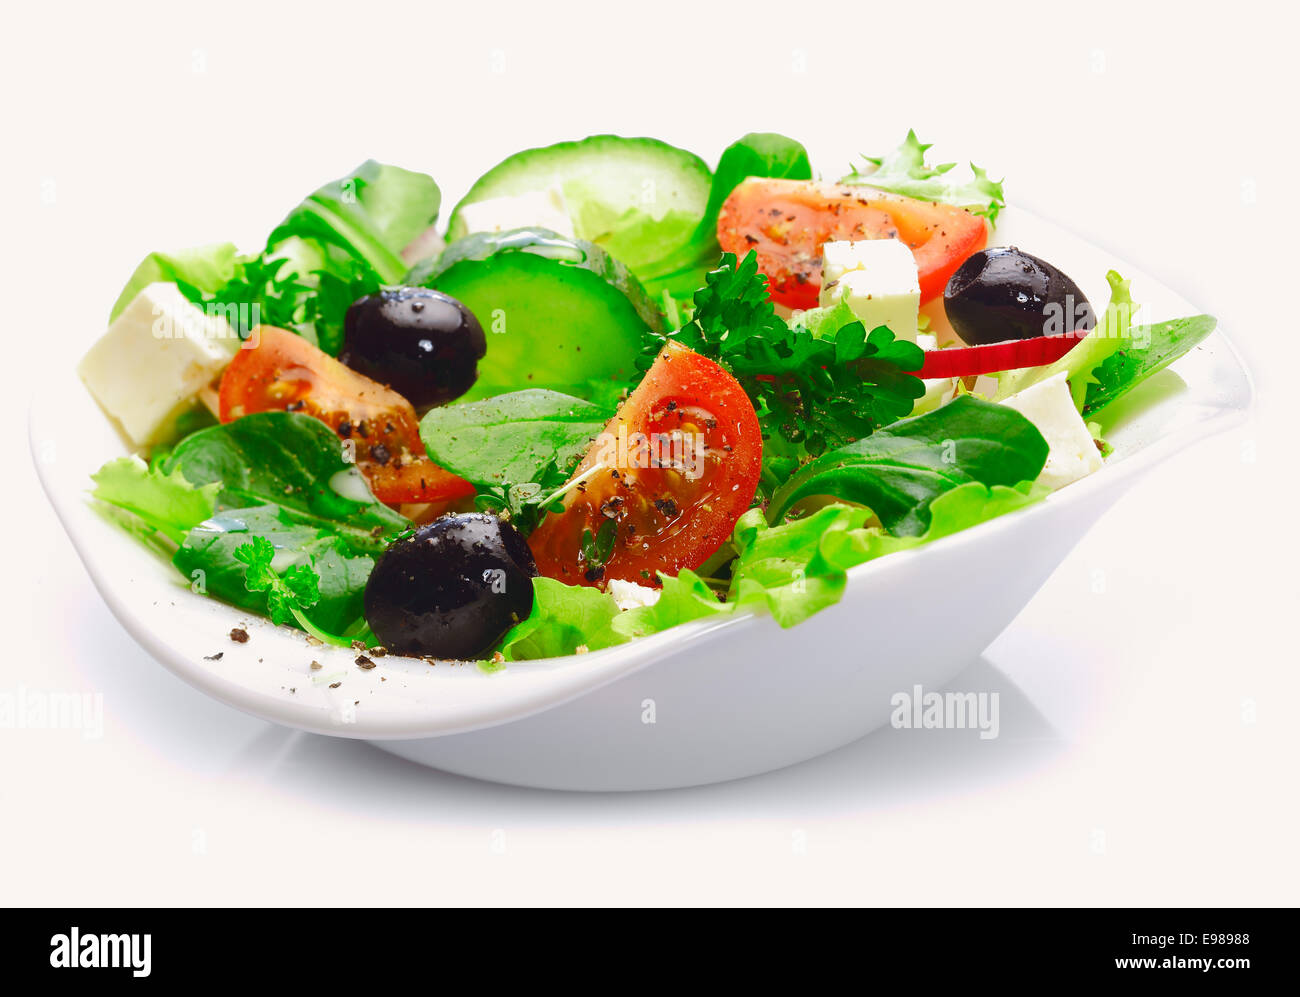 Côté individuels servant de délicieux produits frais salade grecque avec fromage feta, olives, tomates et salade verte Banque D'Images